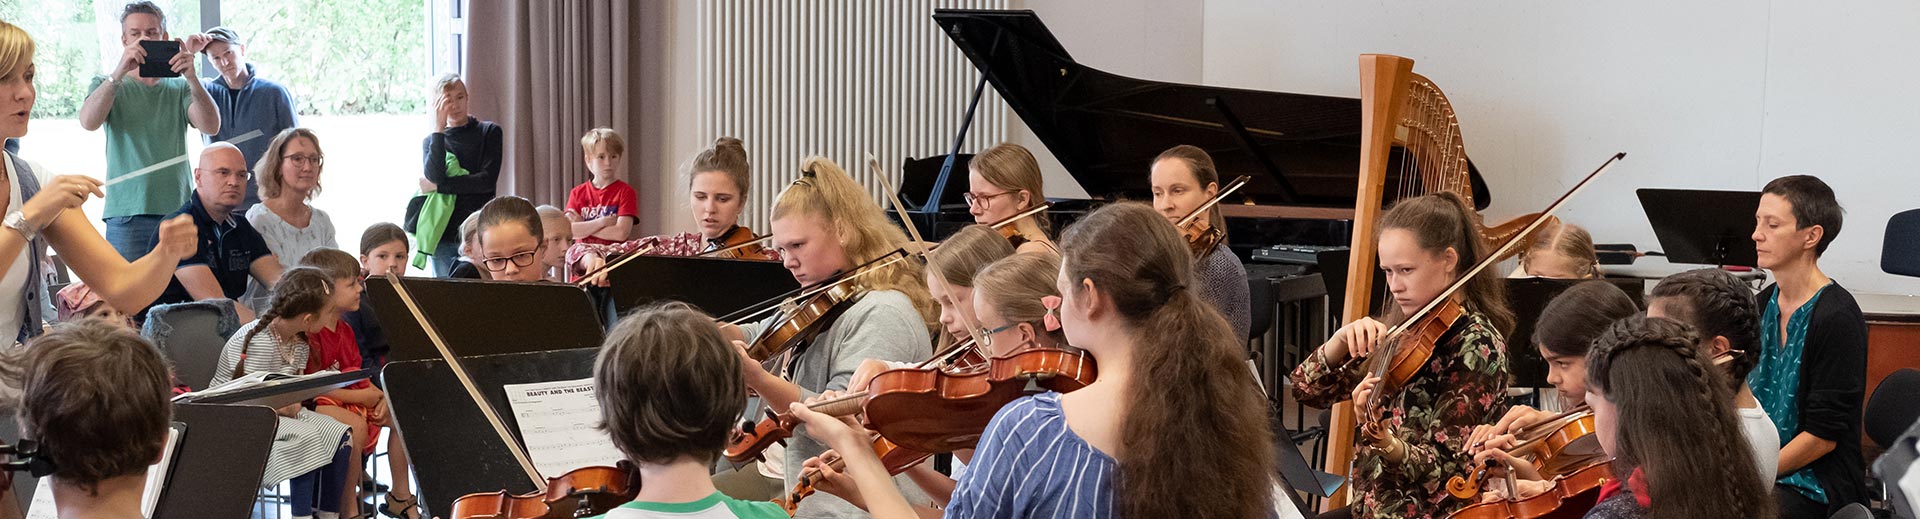 Vororchester – Musikschule Bayreuth